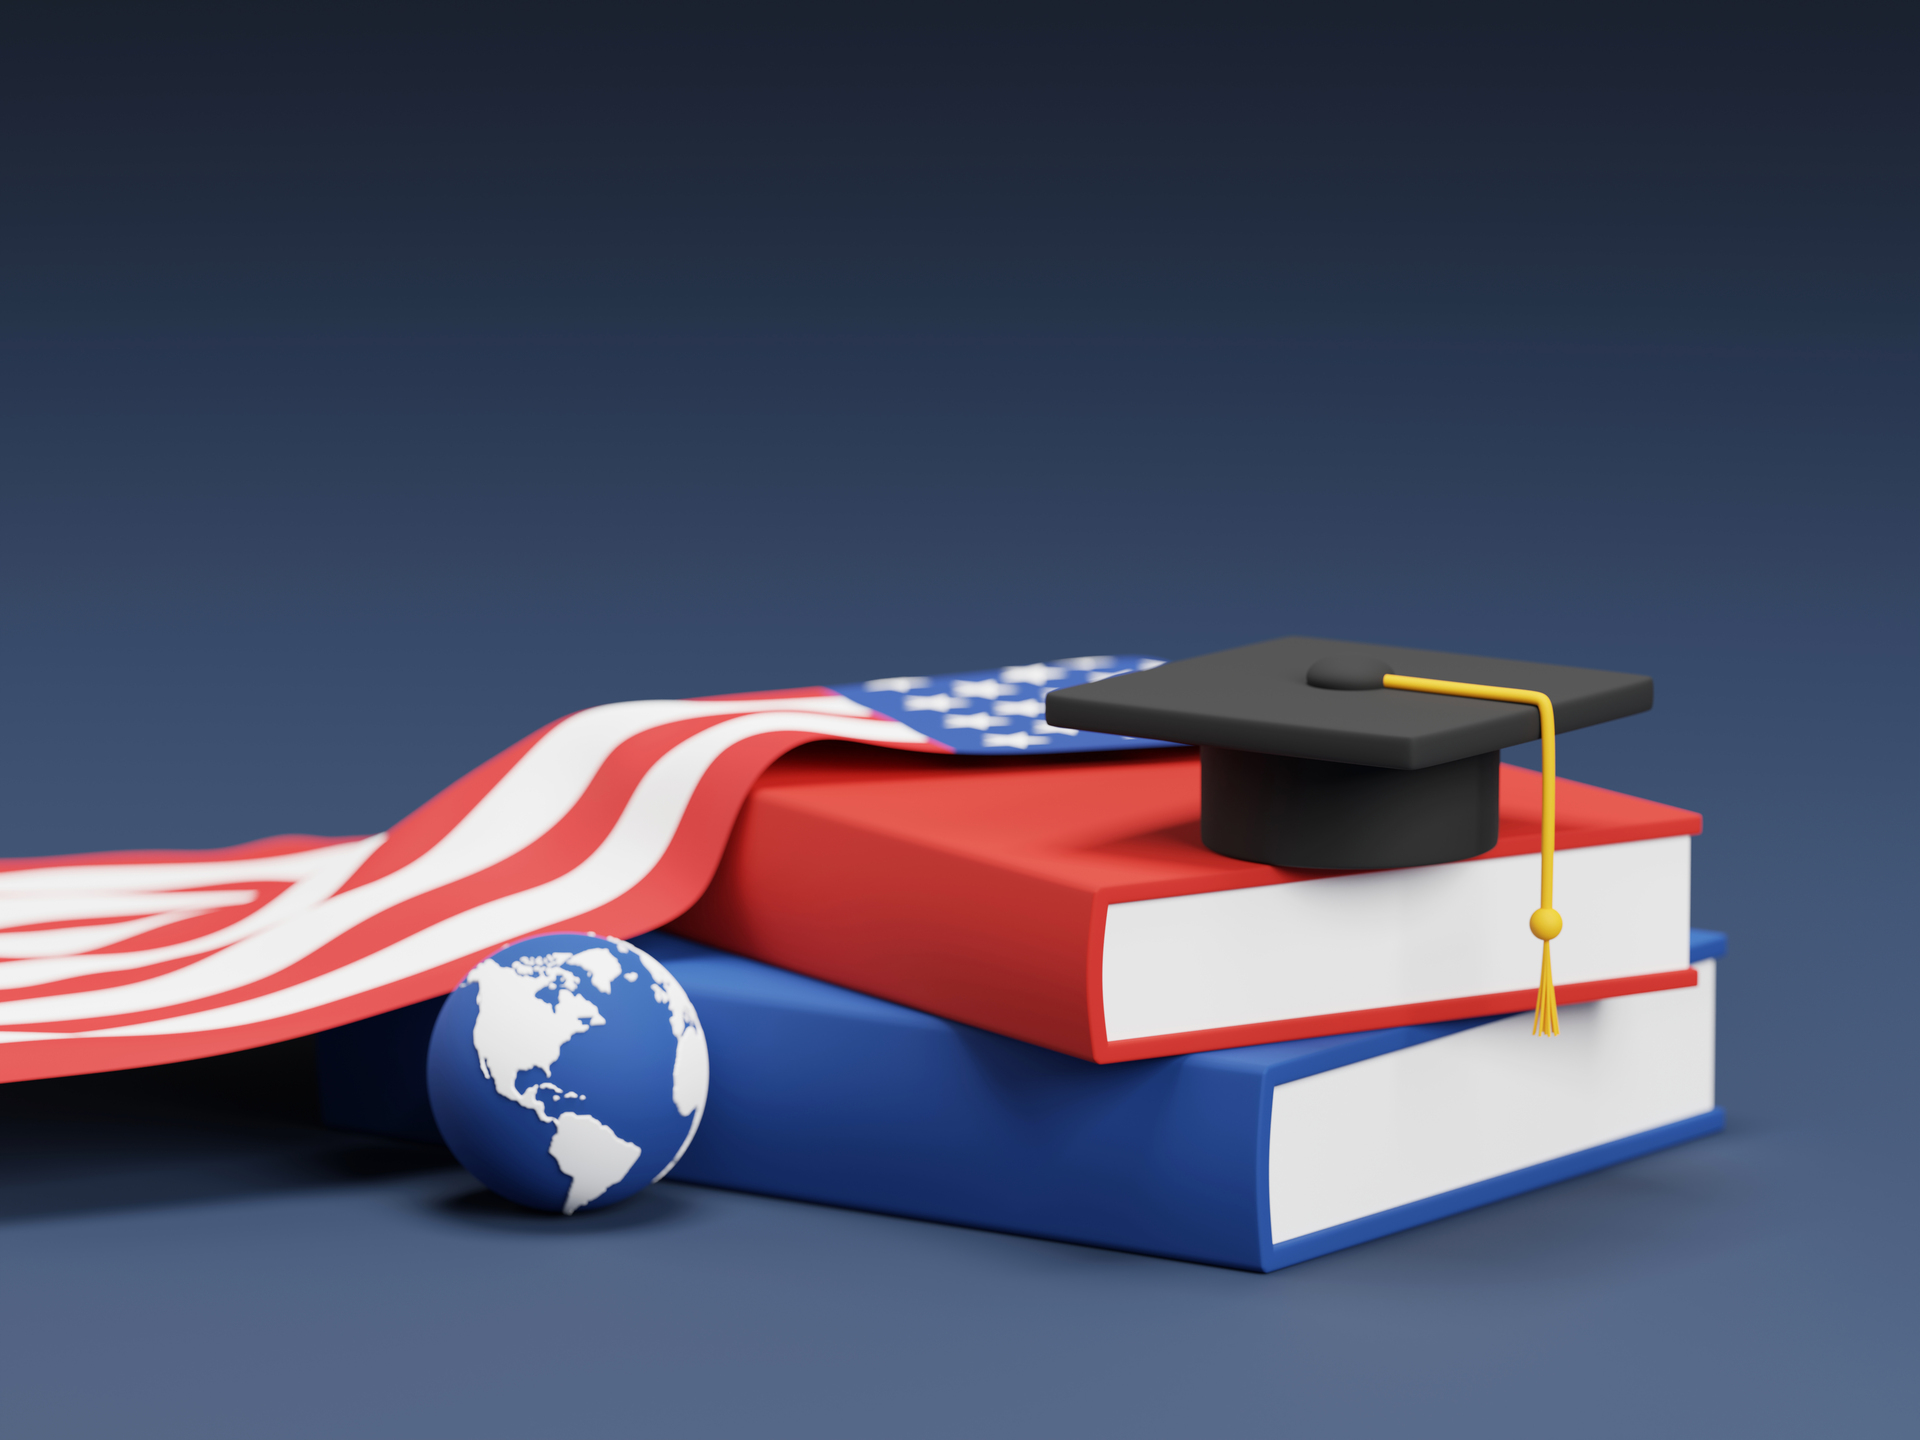 Na tym znaczącym obrazku możemy podziwiać złożoną symbolikę związana z edukacją i patriotyzmem. Czapka studencka, książki, globus i flaga USA tworzą inspirujący zestaw, reprezentujący wiedzę, eksplorację oraz miłość do kraju. Czapka studencka symbolizuje dążenie do nauki i osiągnięć akademickich, książki są symbolem wiedzy i nauki, globus reprezentuje globalne perspektywy, a flaga USA oddaje narodową tożsamość i dumę. To zrównoważone połączenie obrazuje znaczenie edukacji, odkrywania świata i miłości do kraju w procesie kształcenia